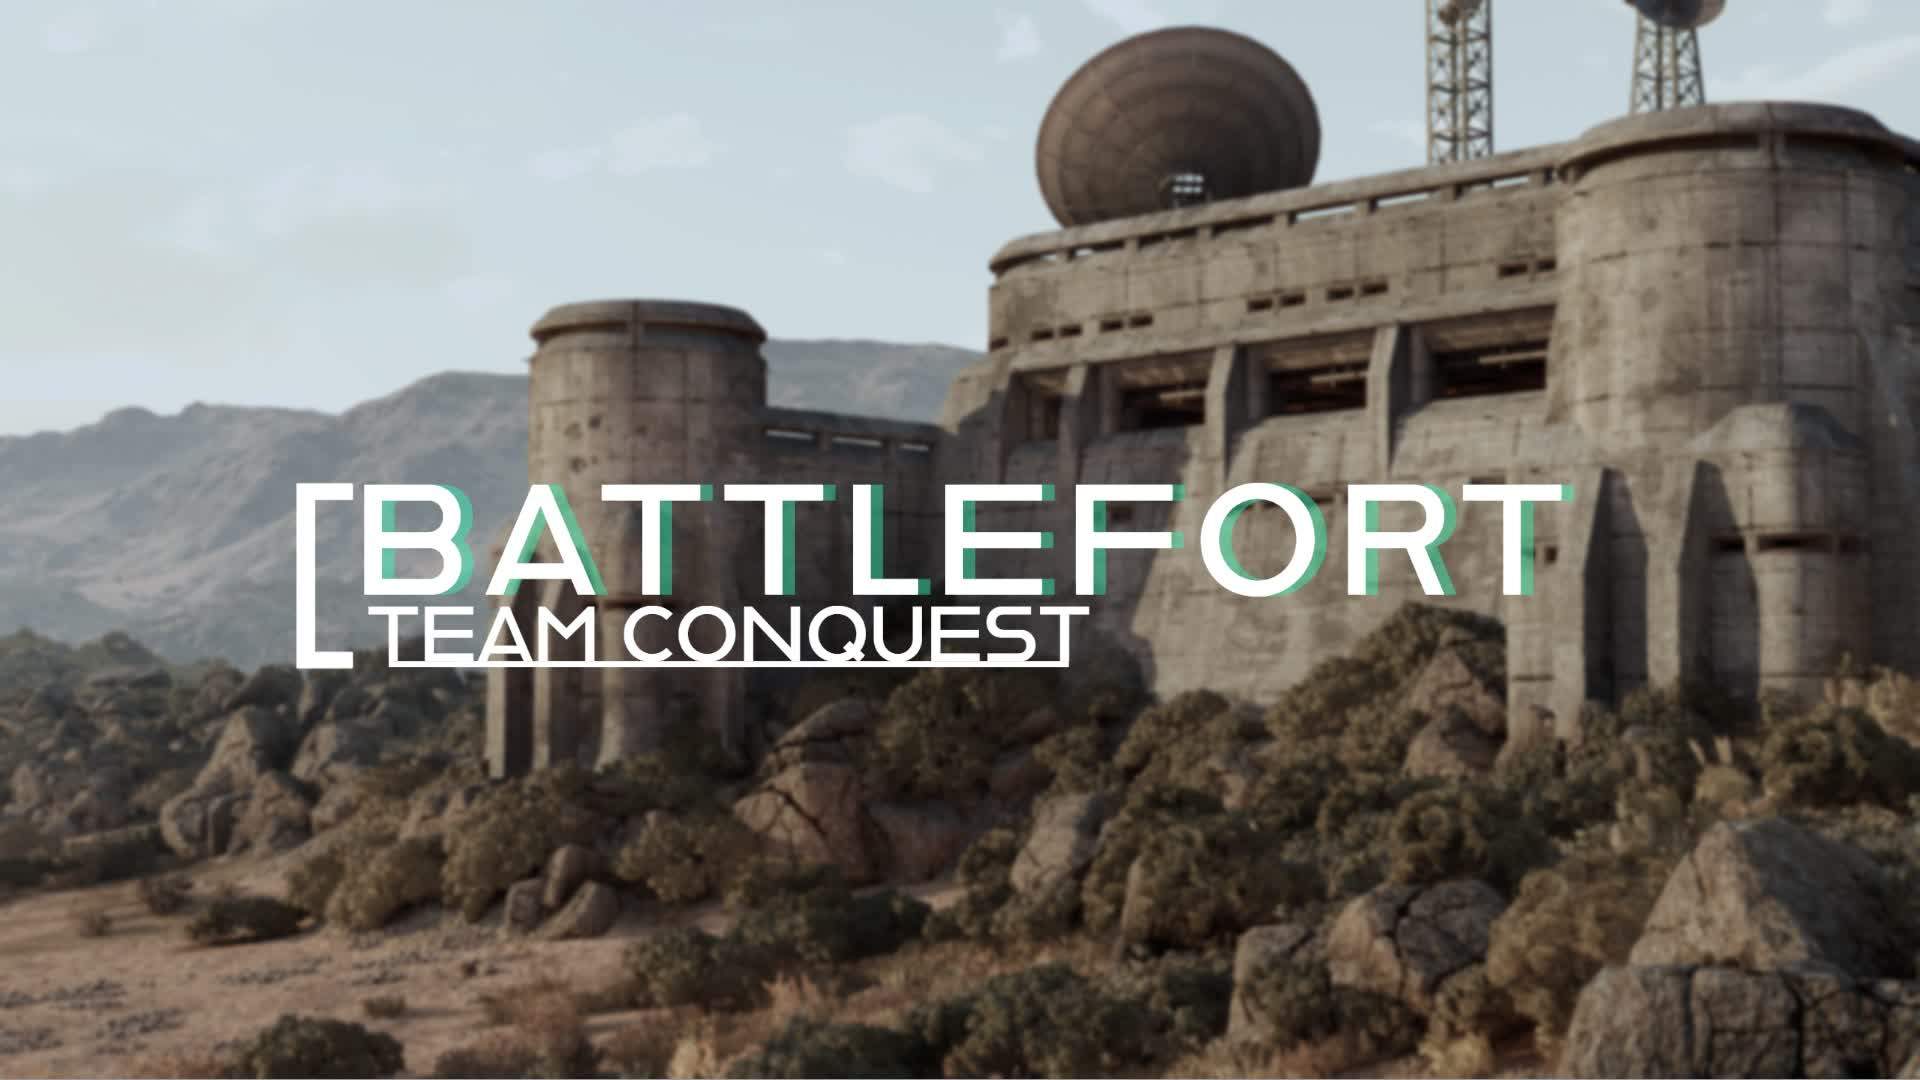 BattleFort - Team Conquest